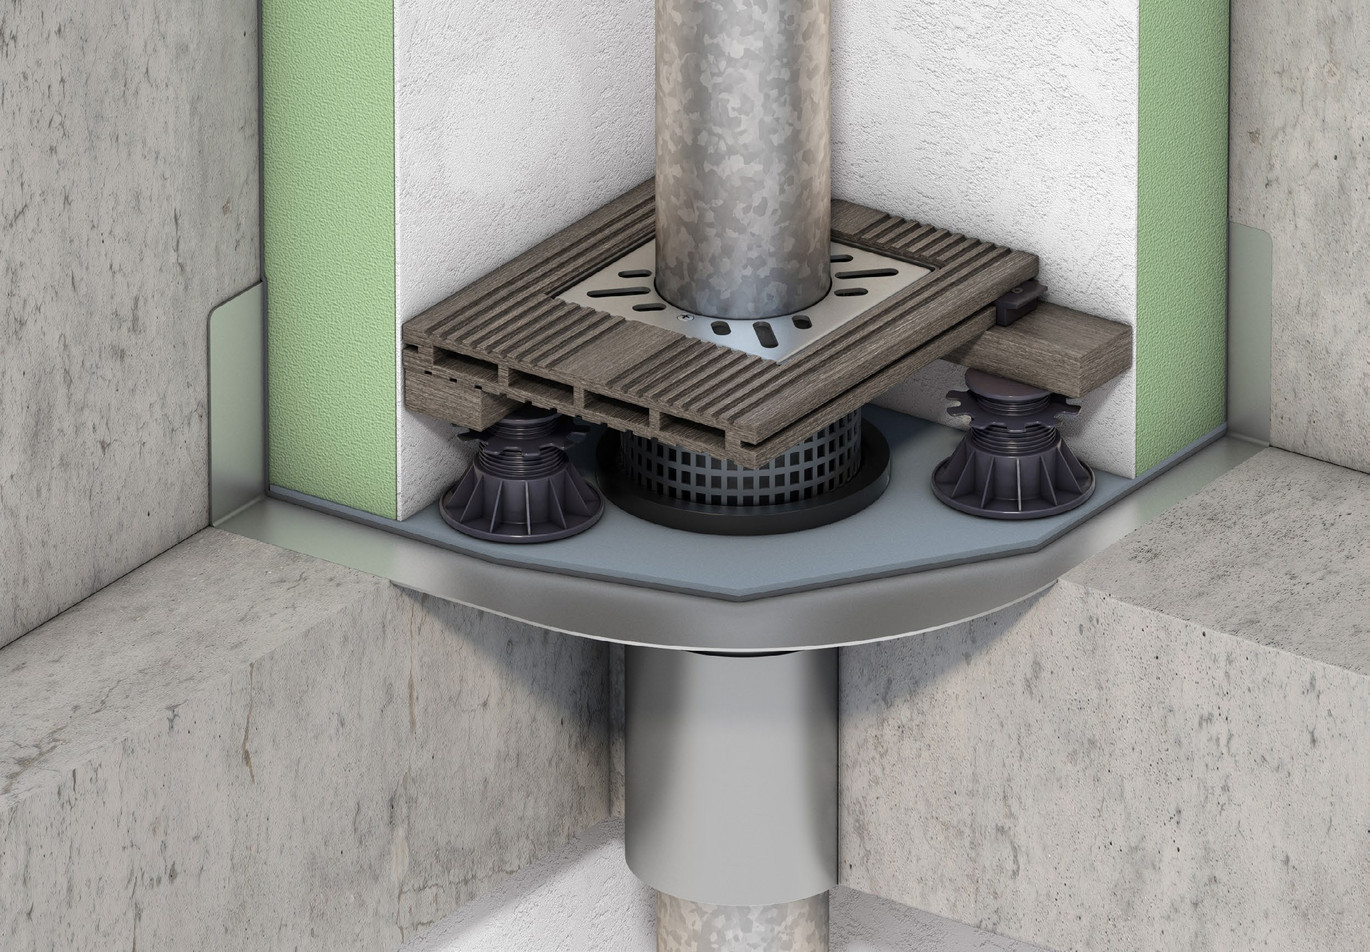 Gură de scurgere cu flanșă de perete pentru integrare în stratificație de beton cu hidroizolație lichidă și în pardoseala tip deck